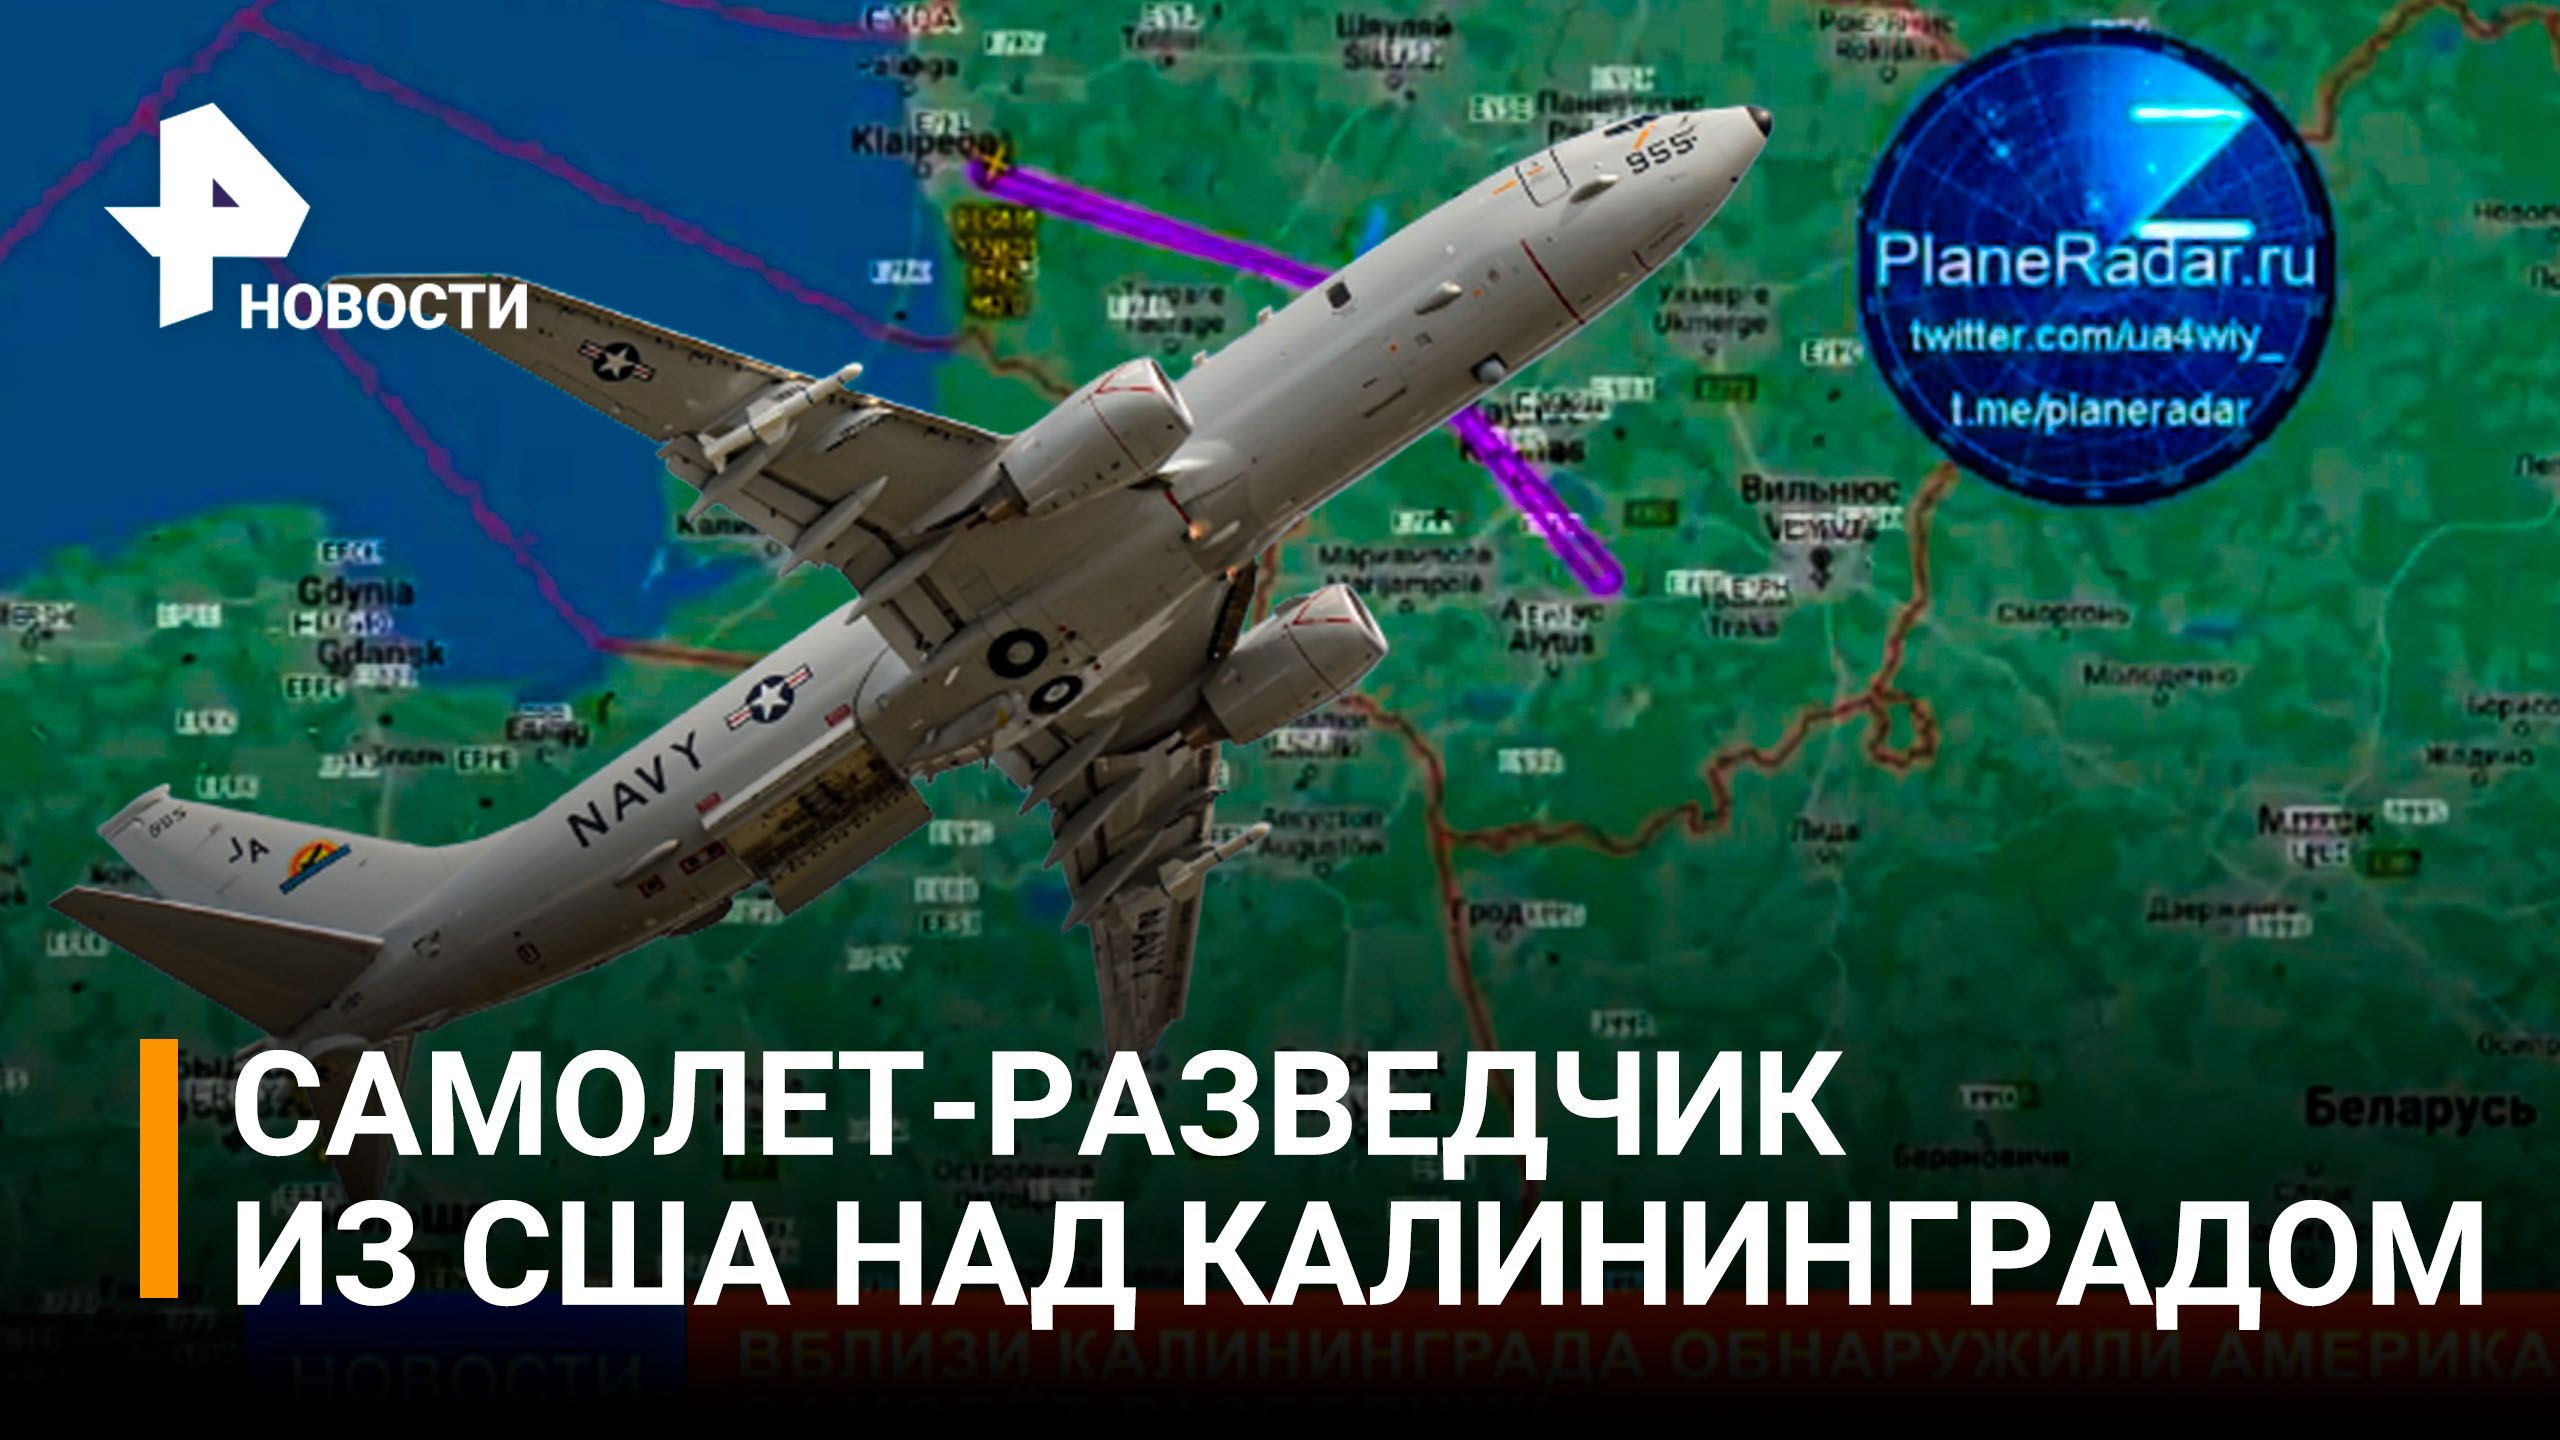 Вблизи Калининграда обнаружили самолет-разведчик США / РЕН Новости